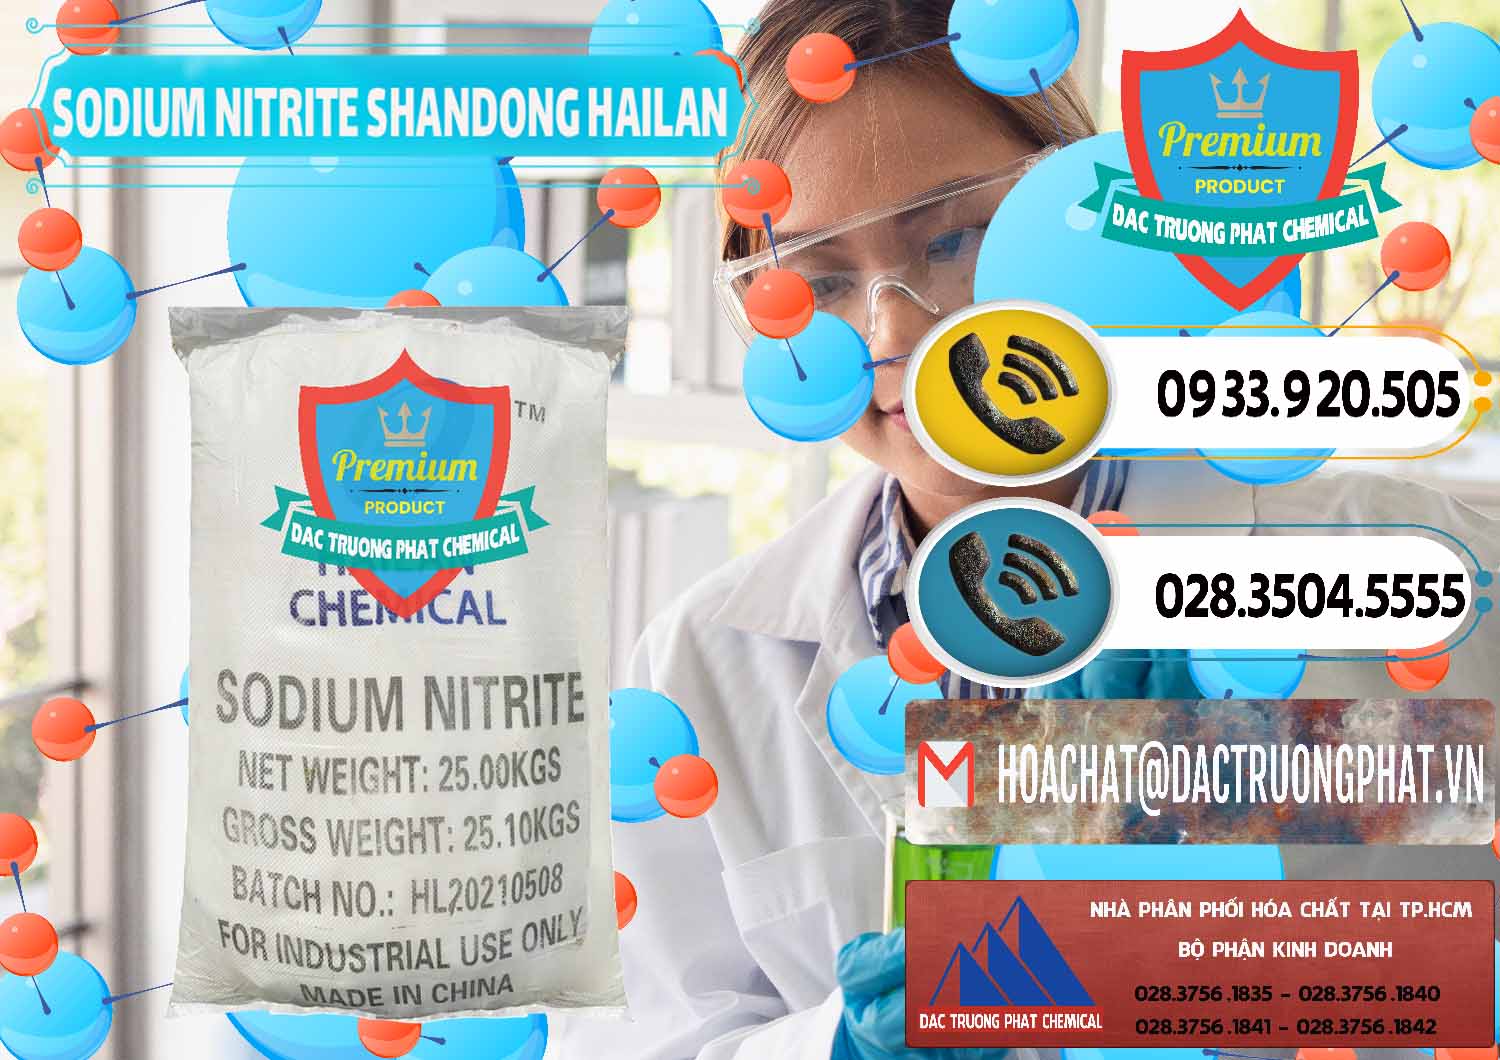 Đơn vị chuyên kinh doanh và bán Sodium Nitrite - NANO2 99.3% Shandong Hailan Trung Quốc China - 0284 - Nơi bán và cung cấp hóa chất tại TP.HCM - hoachatdetnhuom.vn